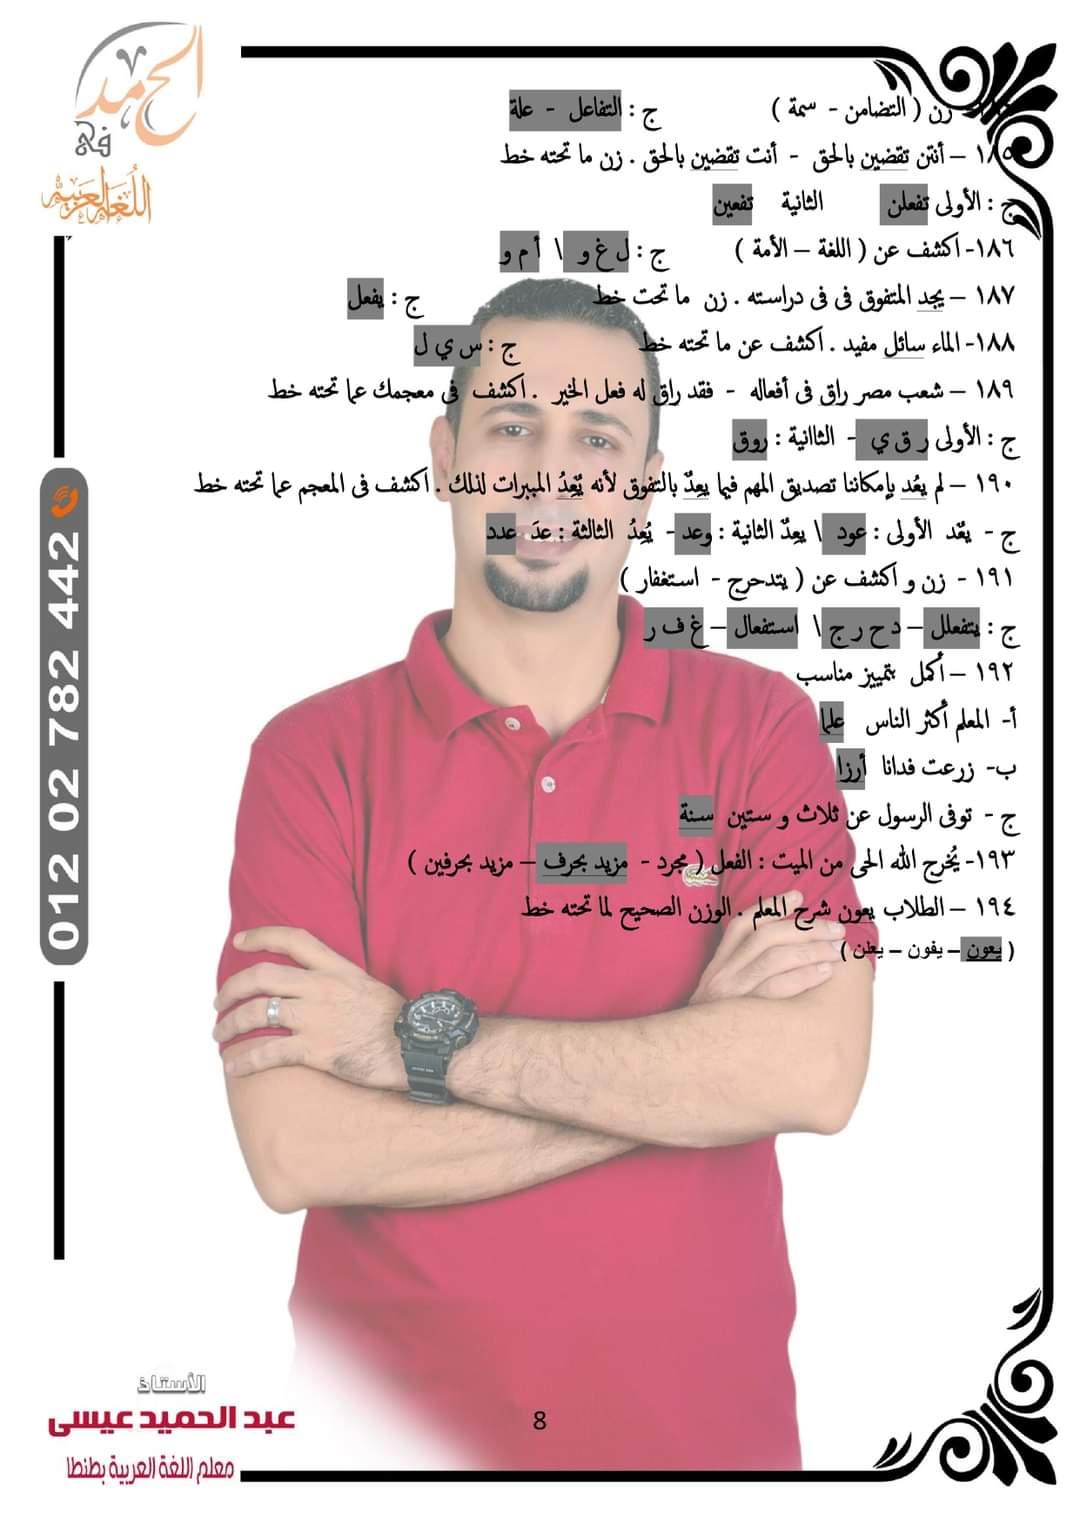 توقعات امتحان اللغة العربية الصف الثاني الاعدادي الترم الثاني كل المحافظات لمستر عبد الحميد عيسى